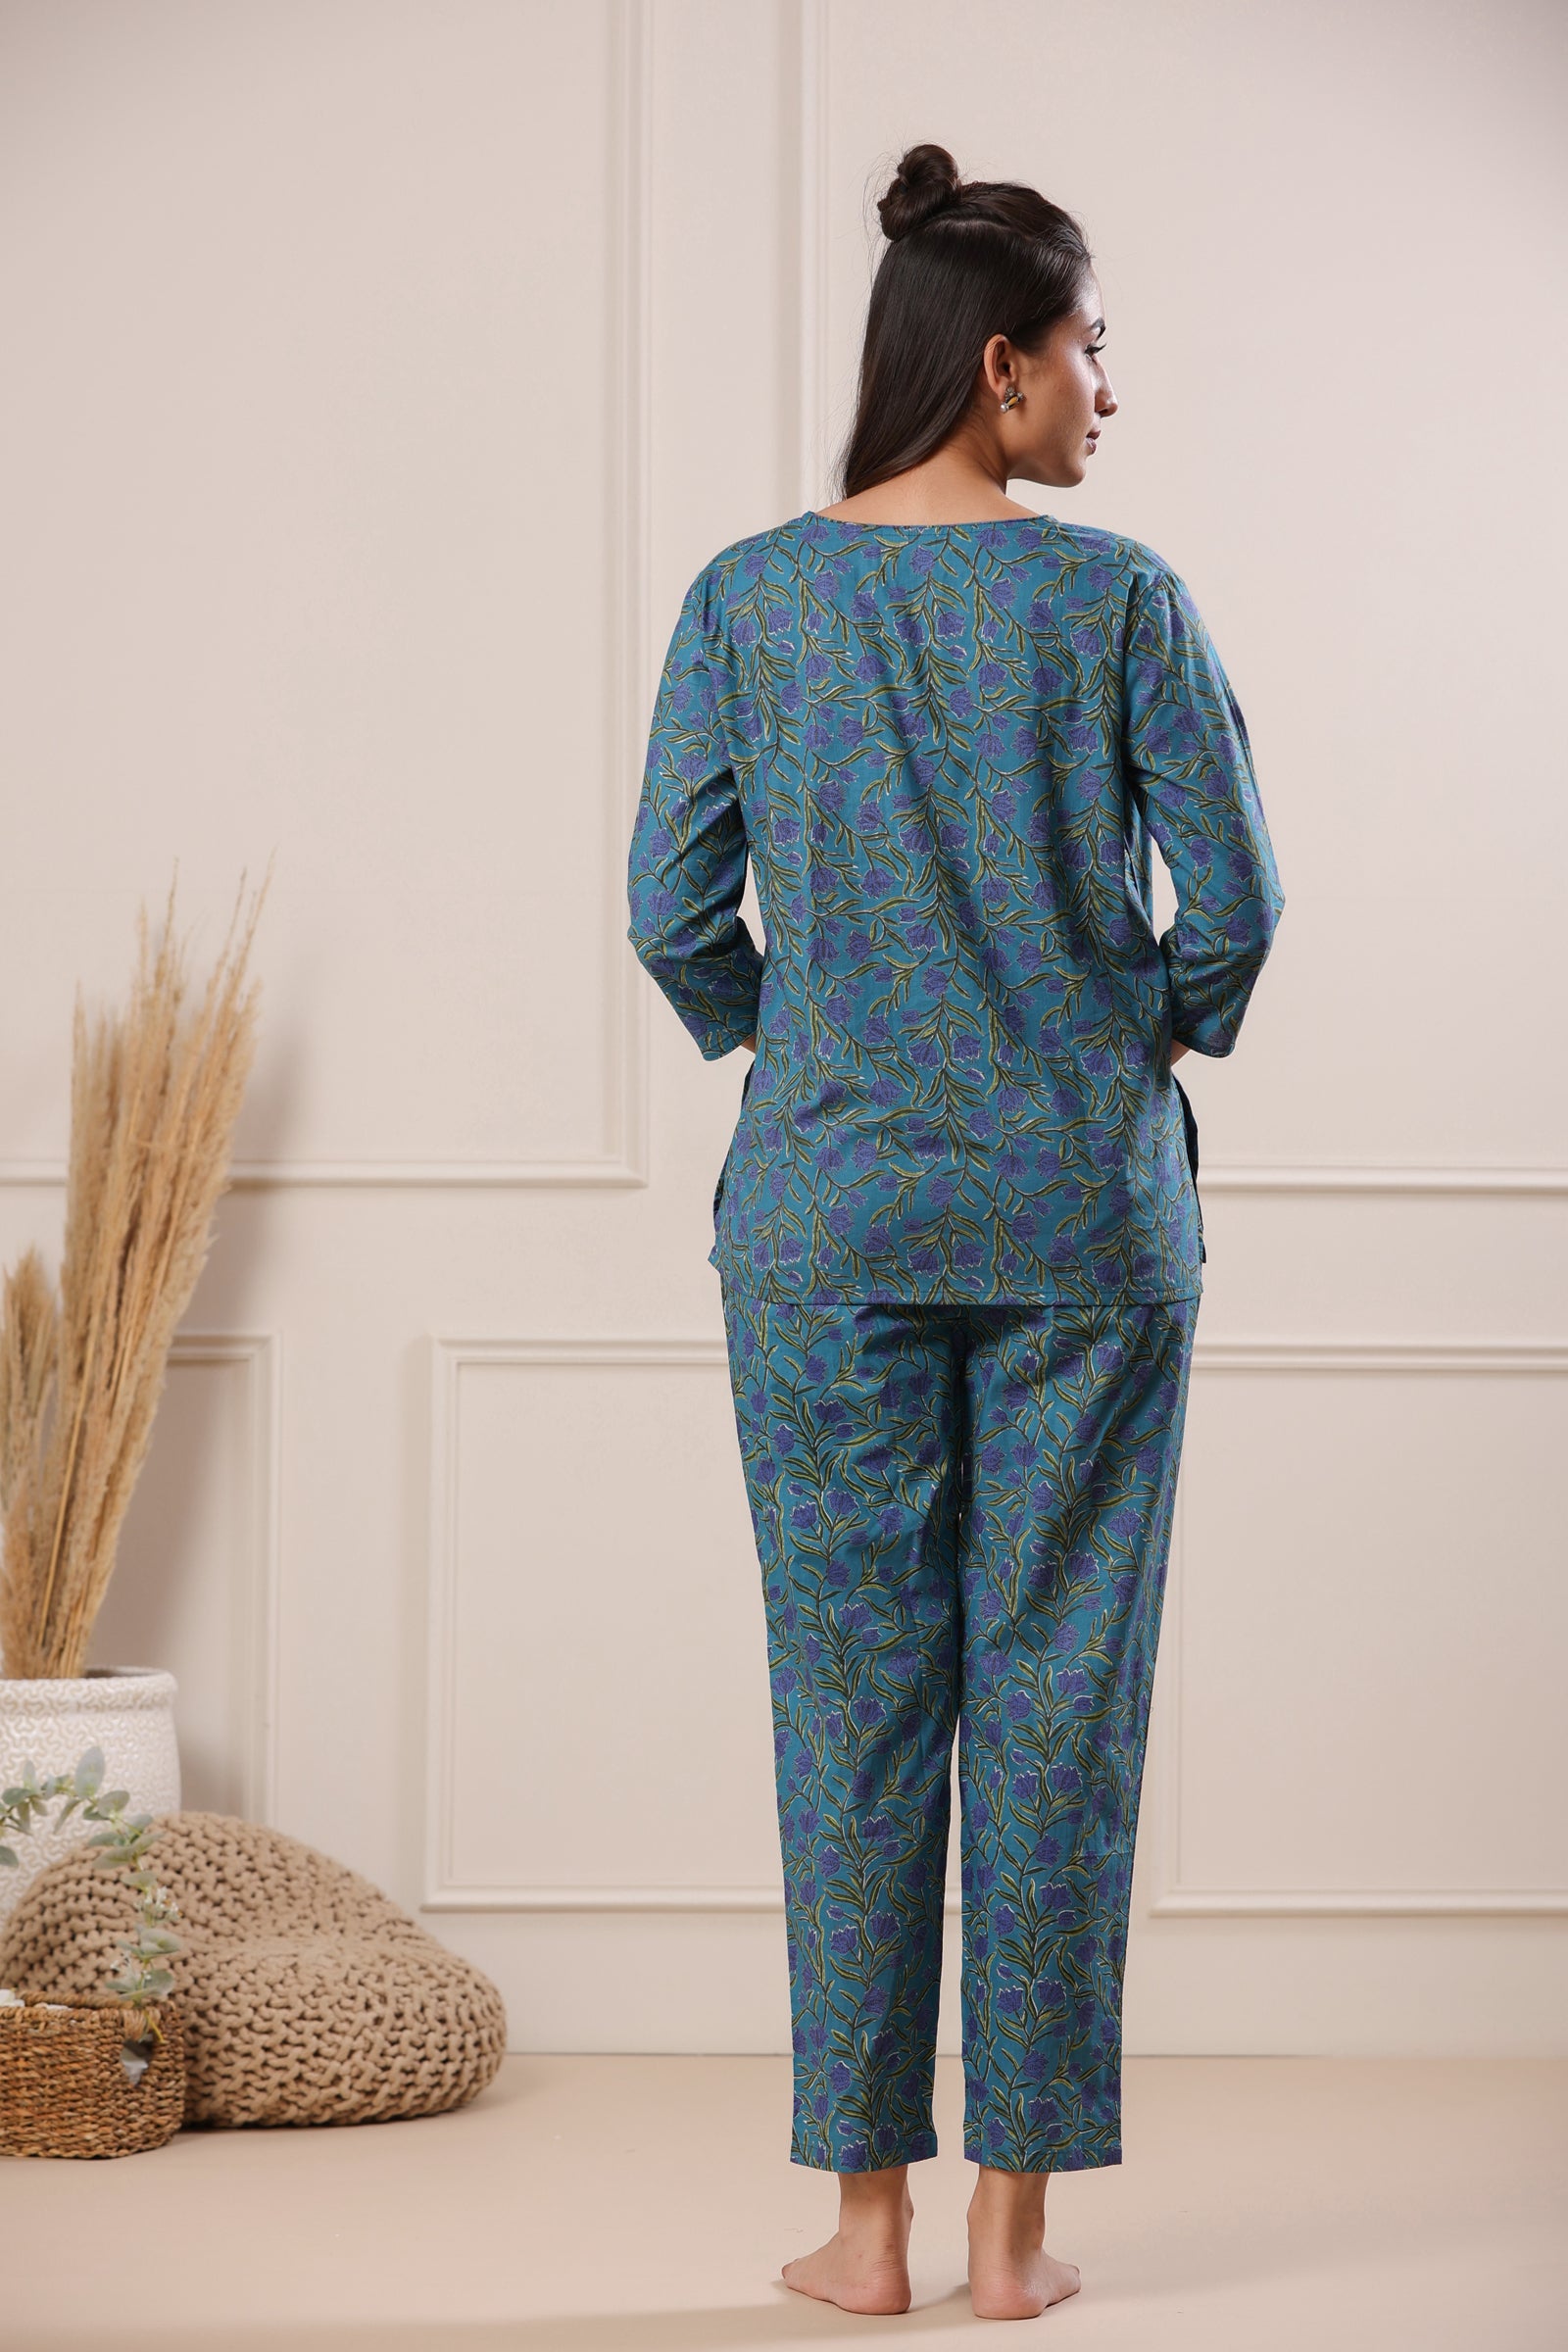 Nidra Lotus Blue Cotton Pyjama Night Suit Set - shahenazindia